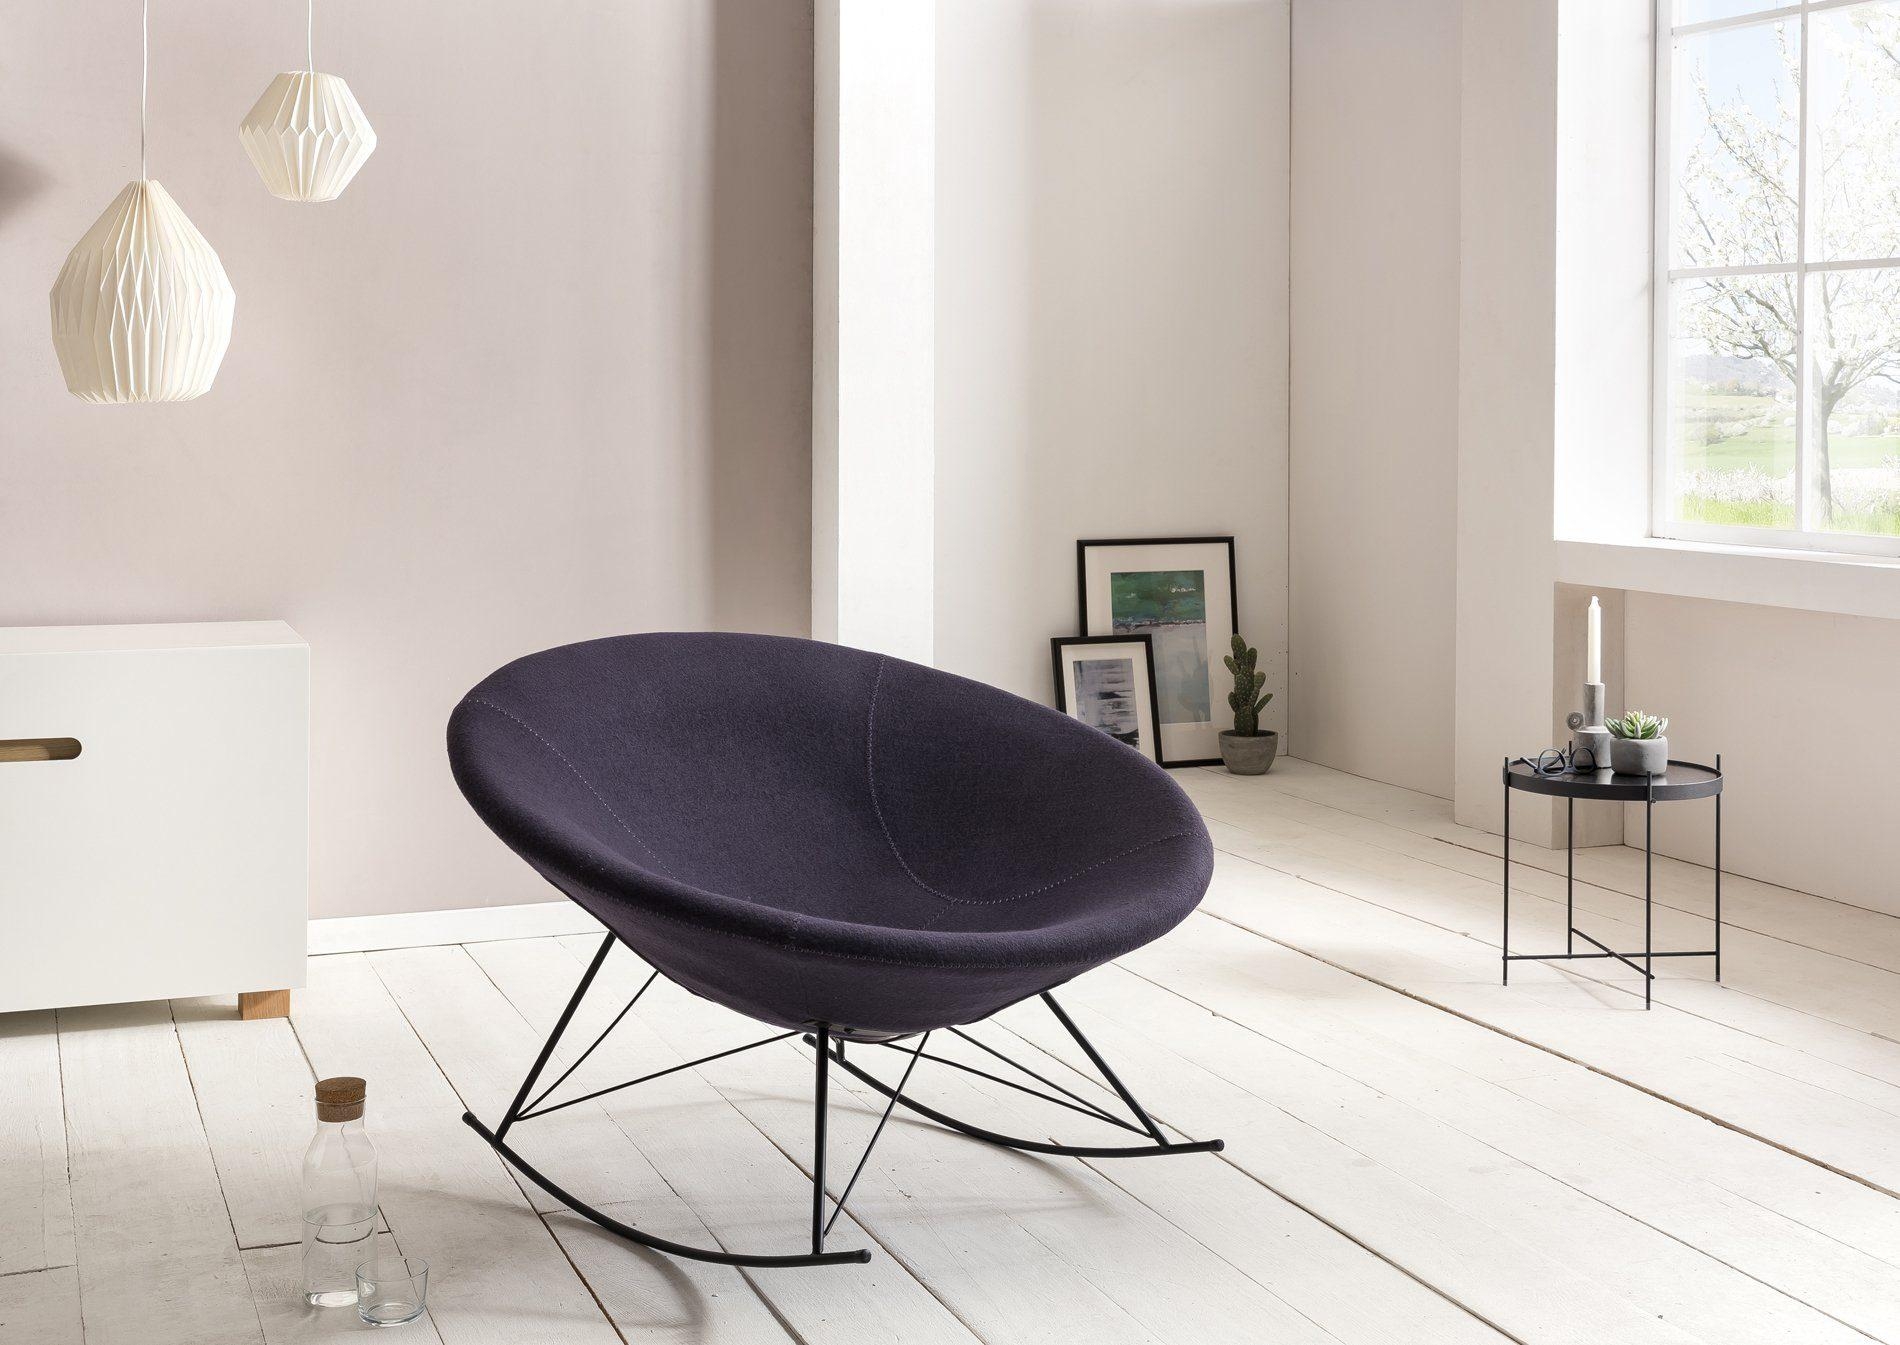 Clean aber cozy: Wir haben den richtigen Platz um ins Wochenende zu versinken! #sessel #wohnzimmer #minimalismus